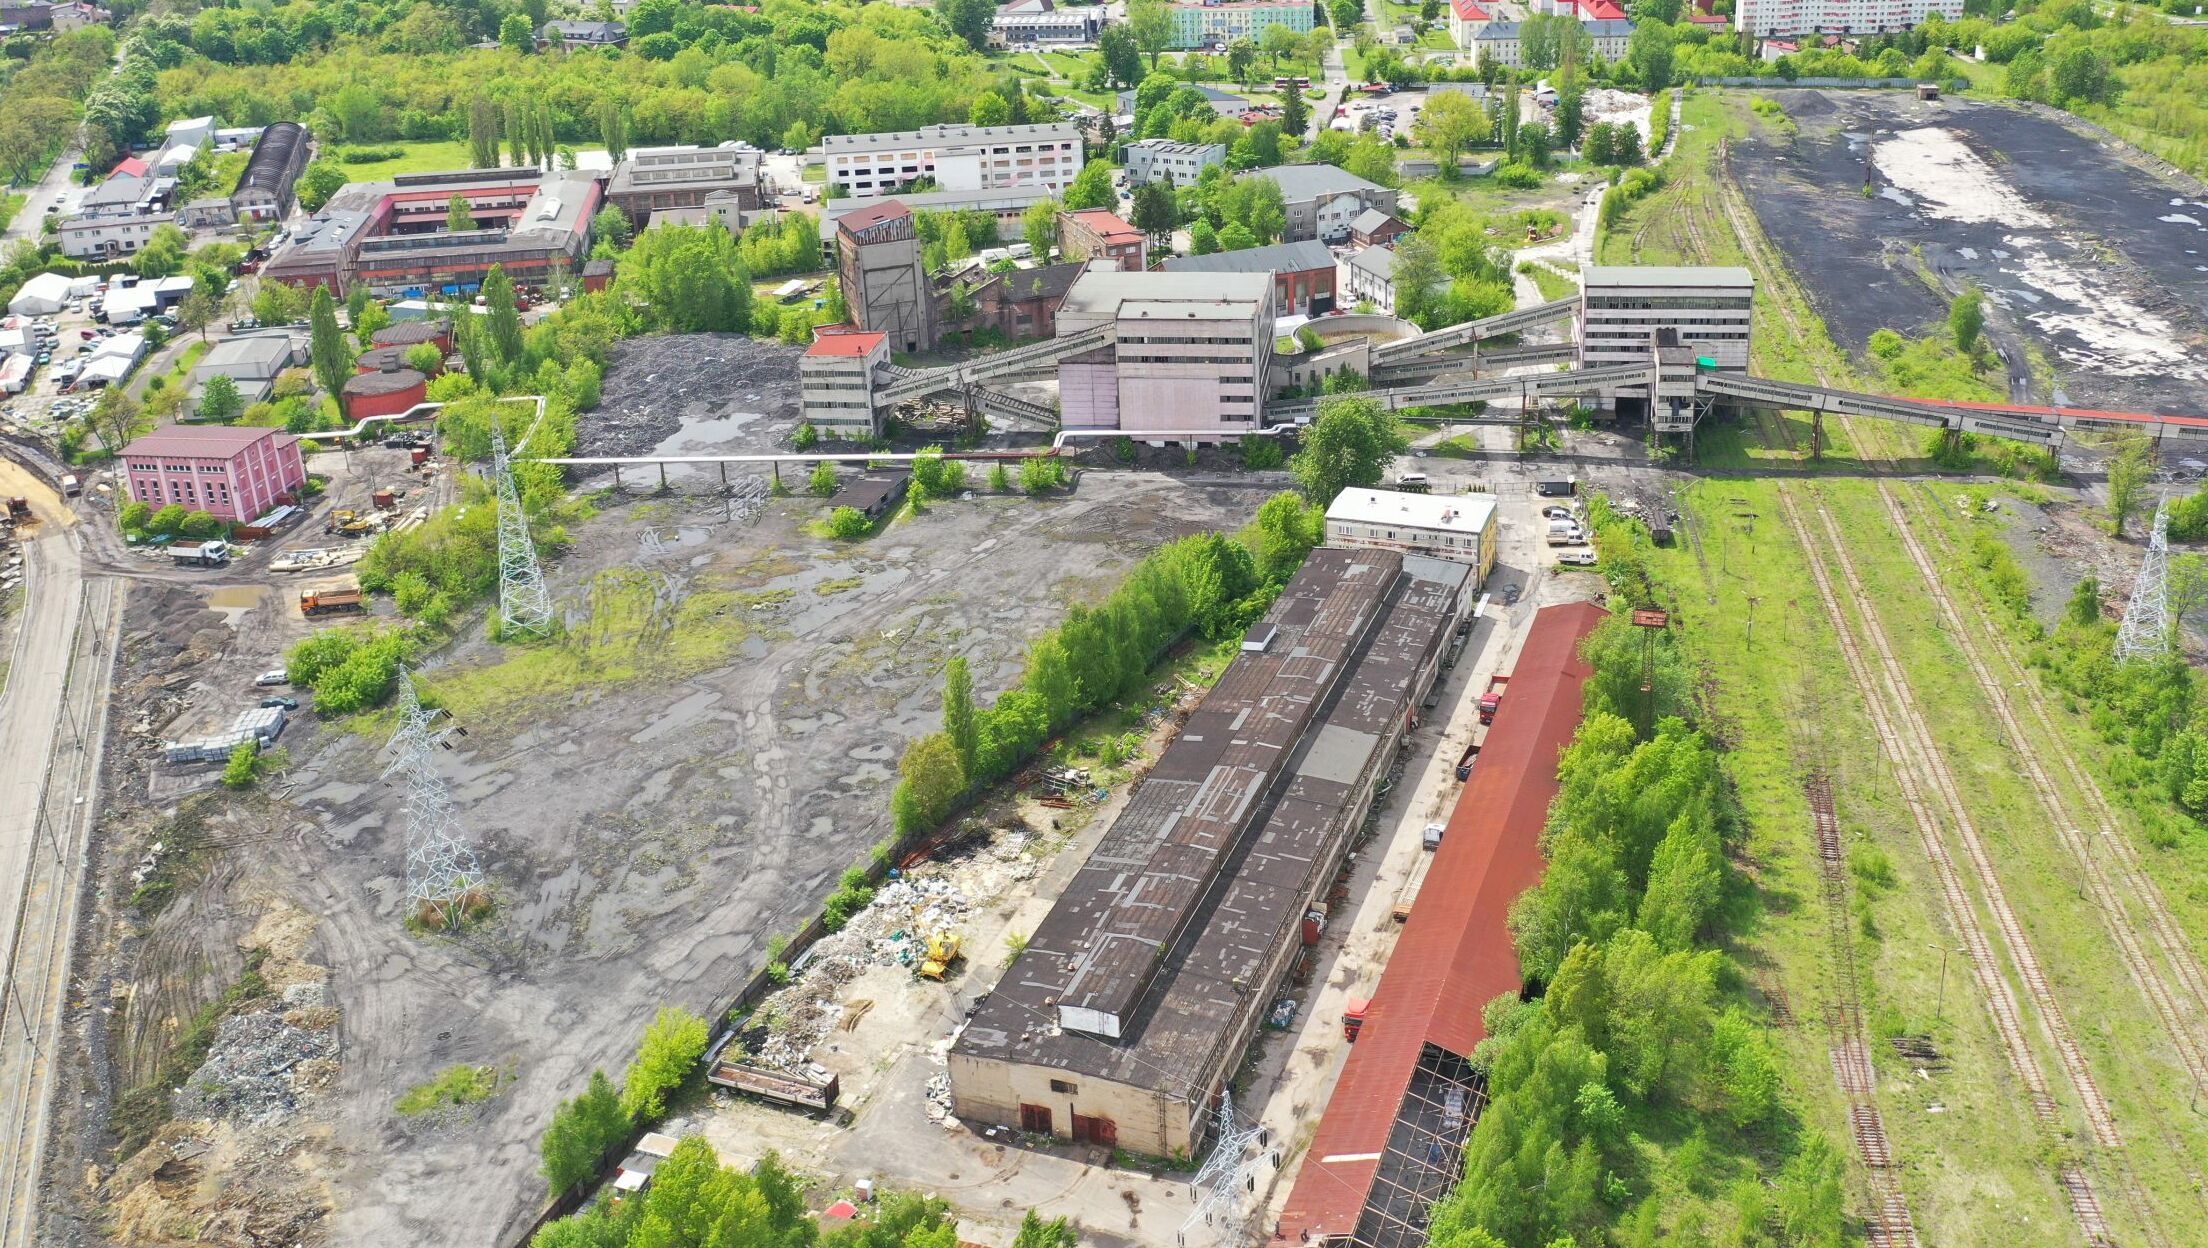 Paris Coal Mine